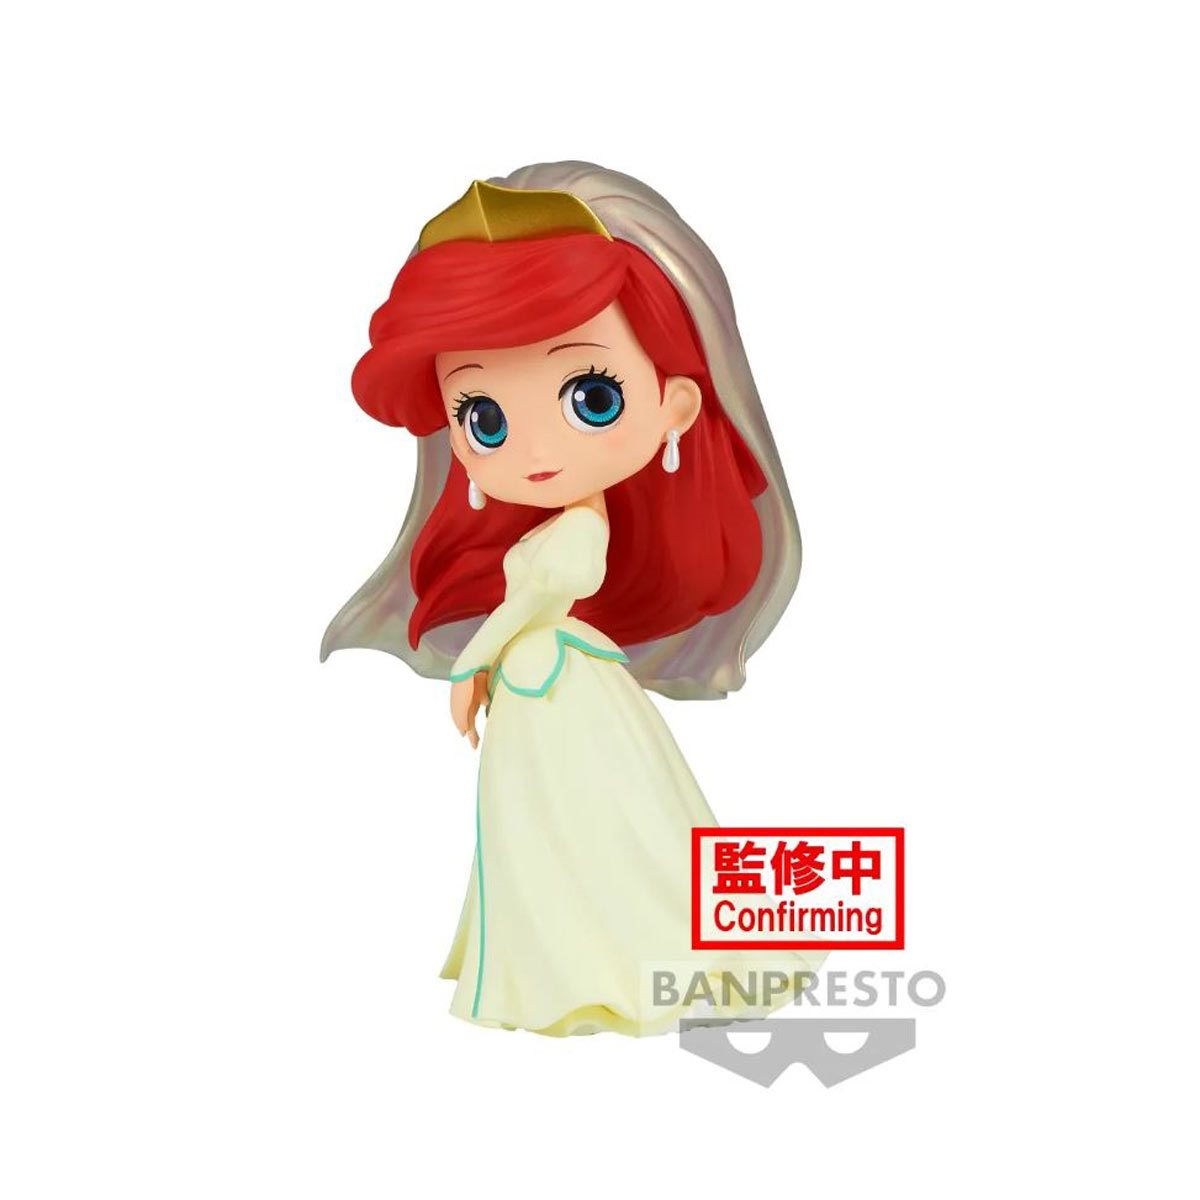 PRESALE | The Little Mermaid - Ariel Royal Style - Q Posket - Version B (Banpresto)